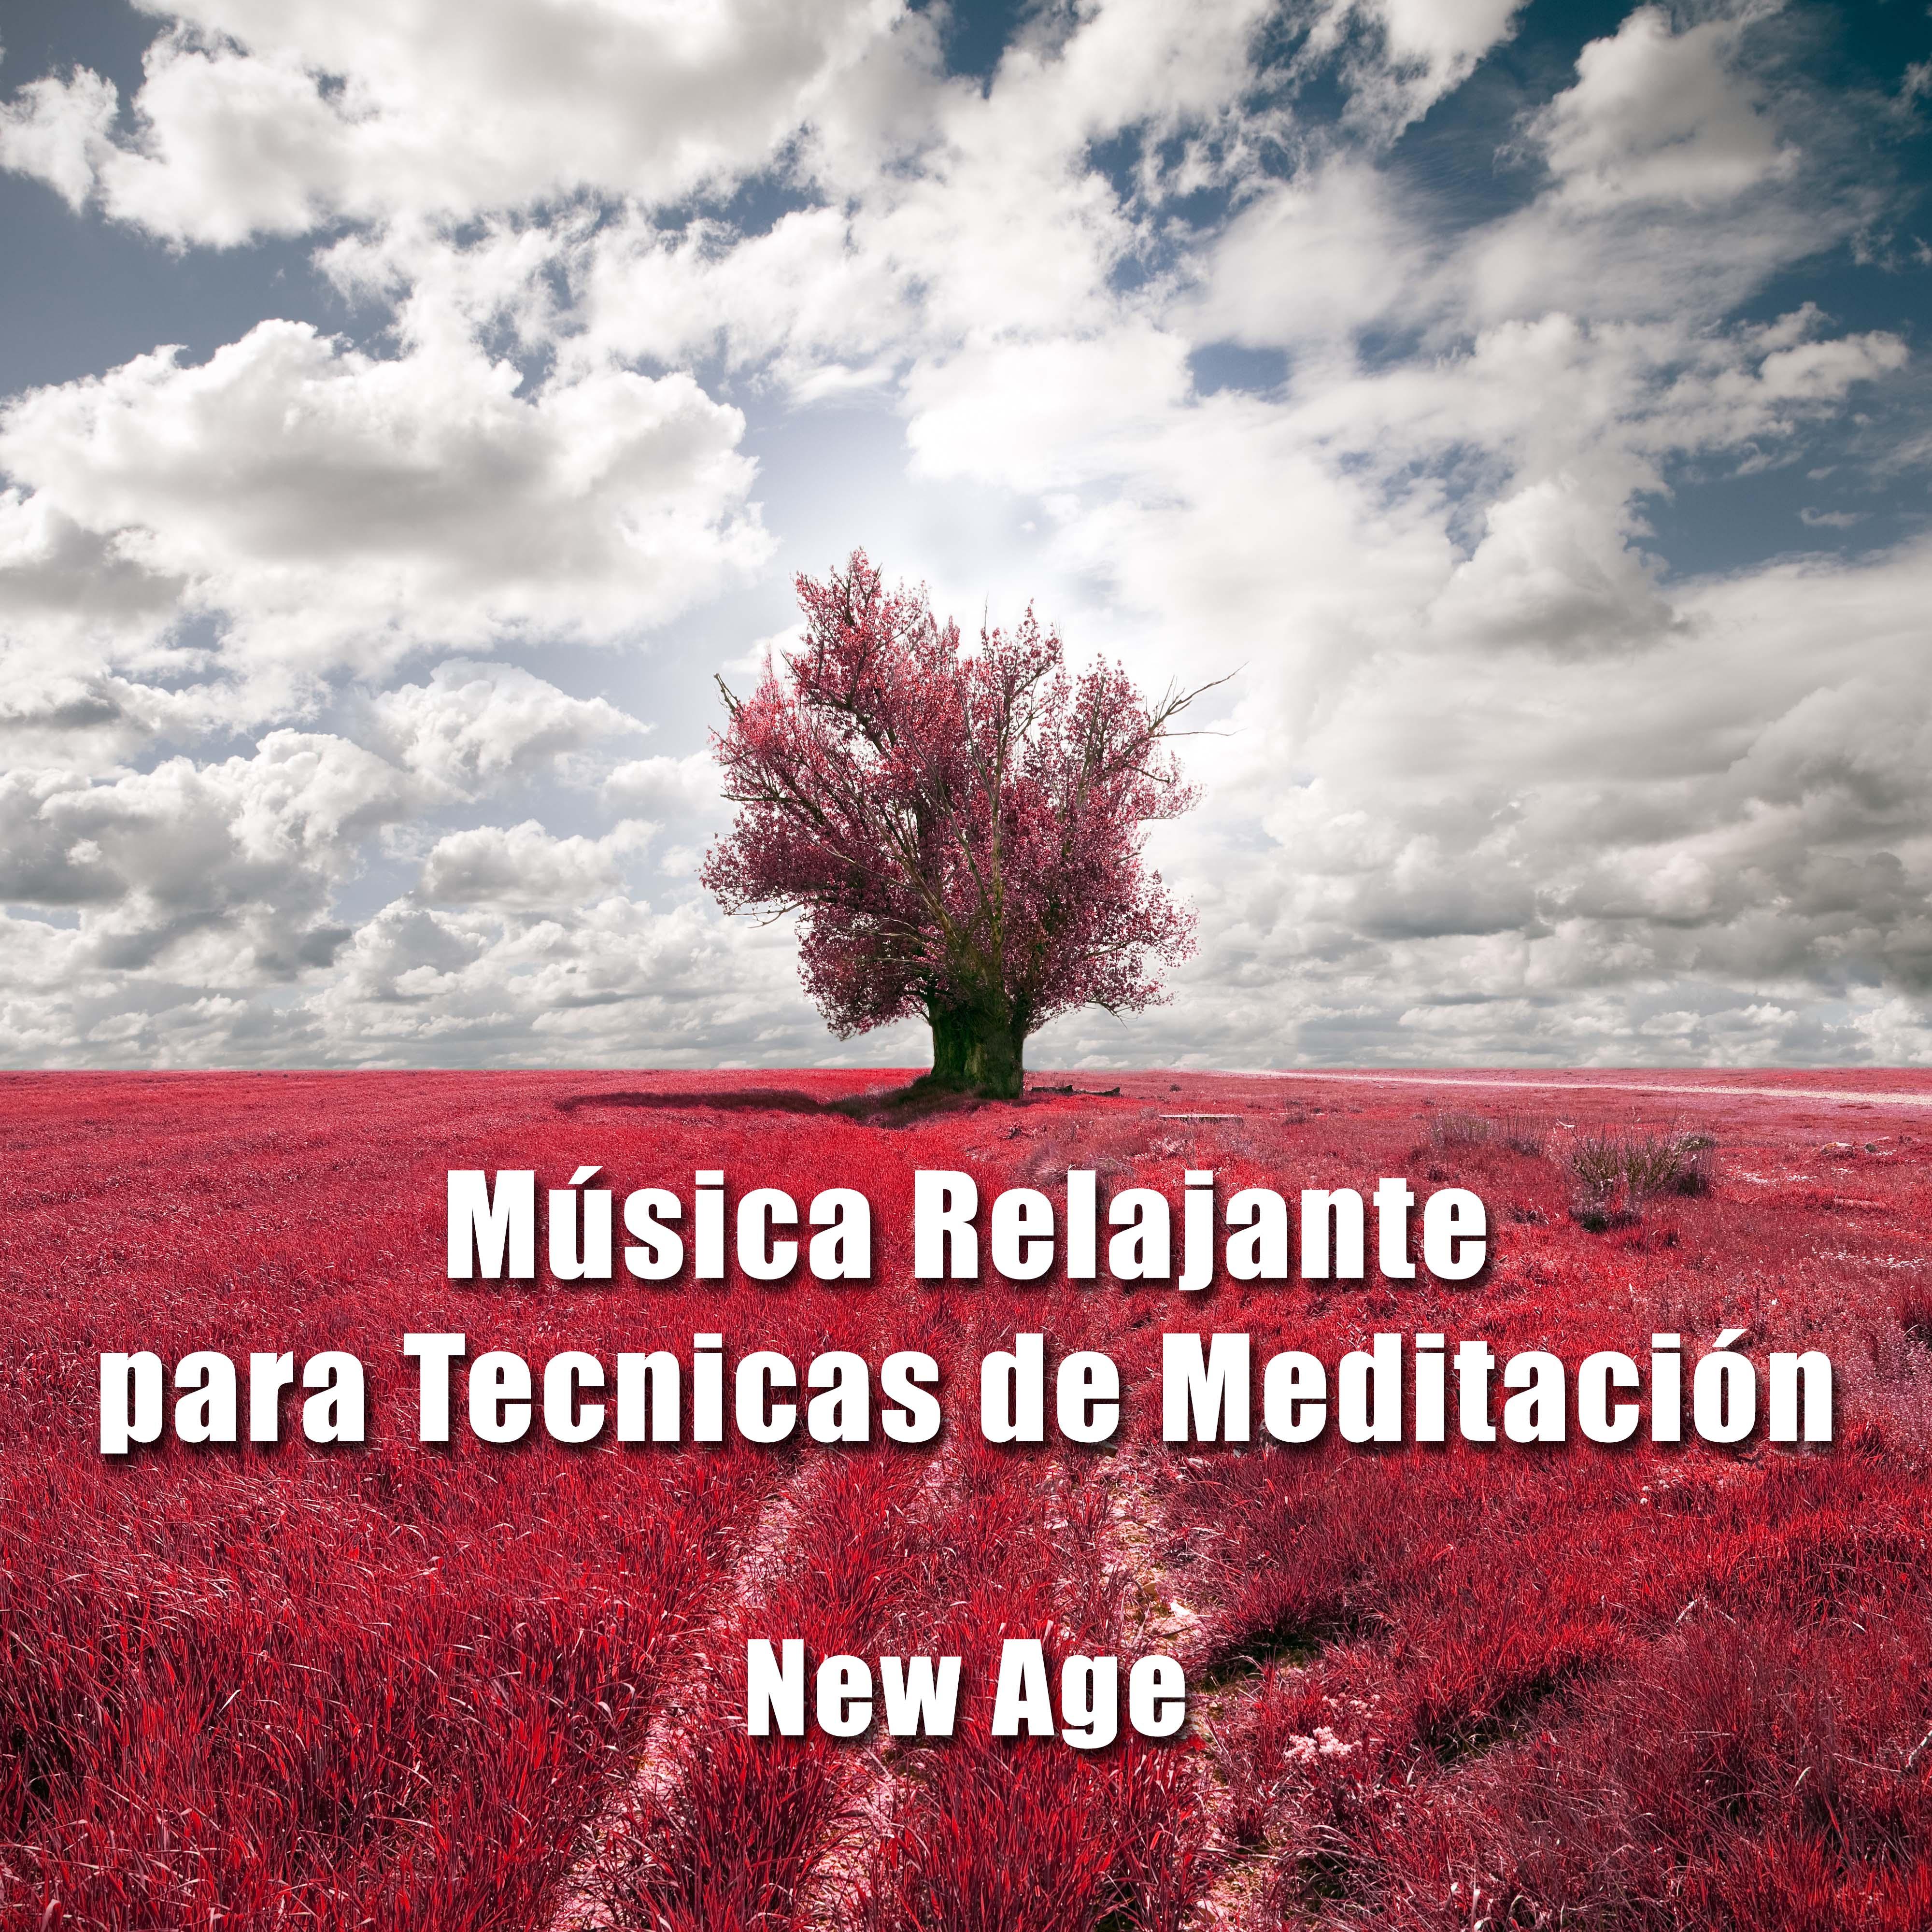 La Mejor Musica Relajante para Tecnicas de Meditacion con Sonidos Naturales